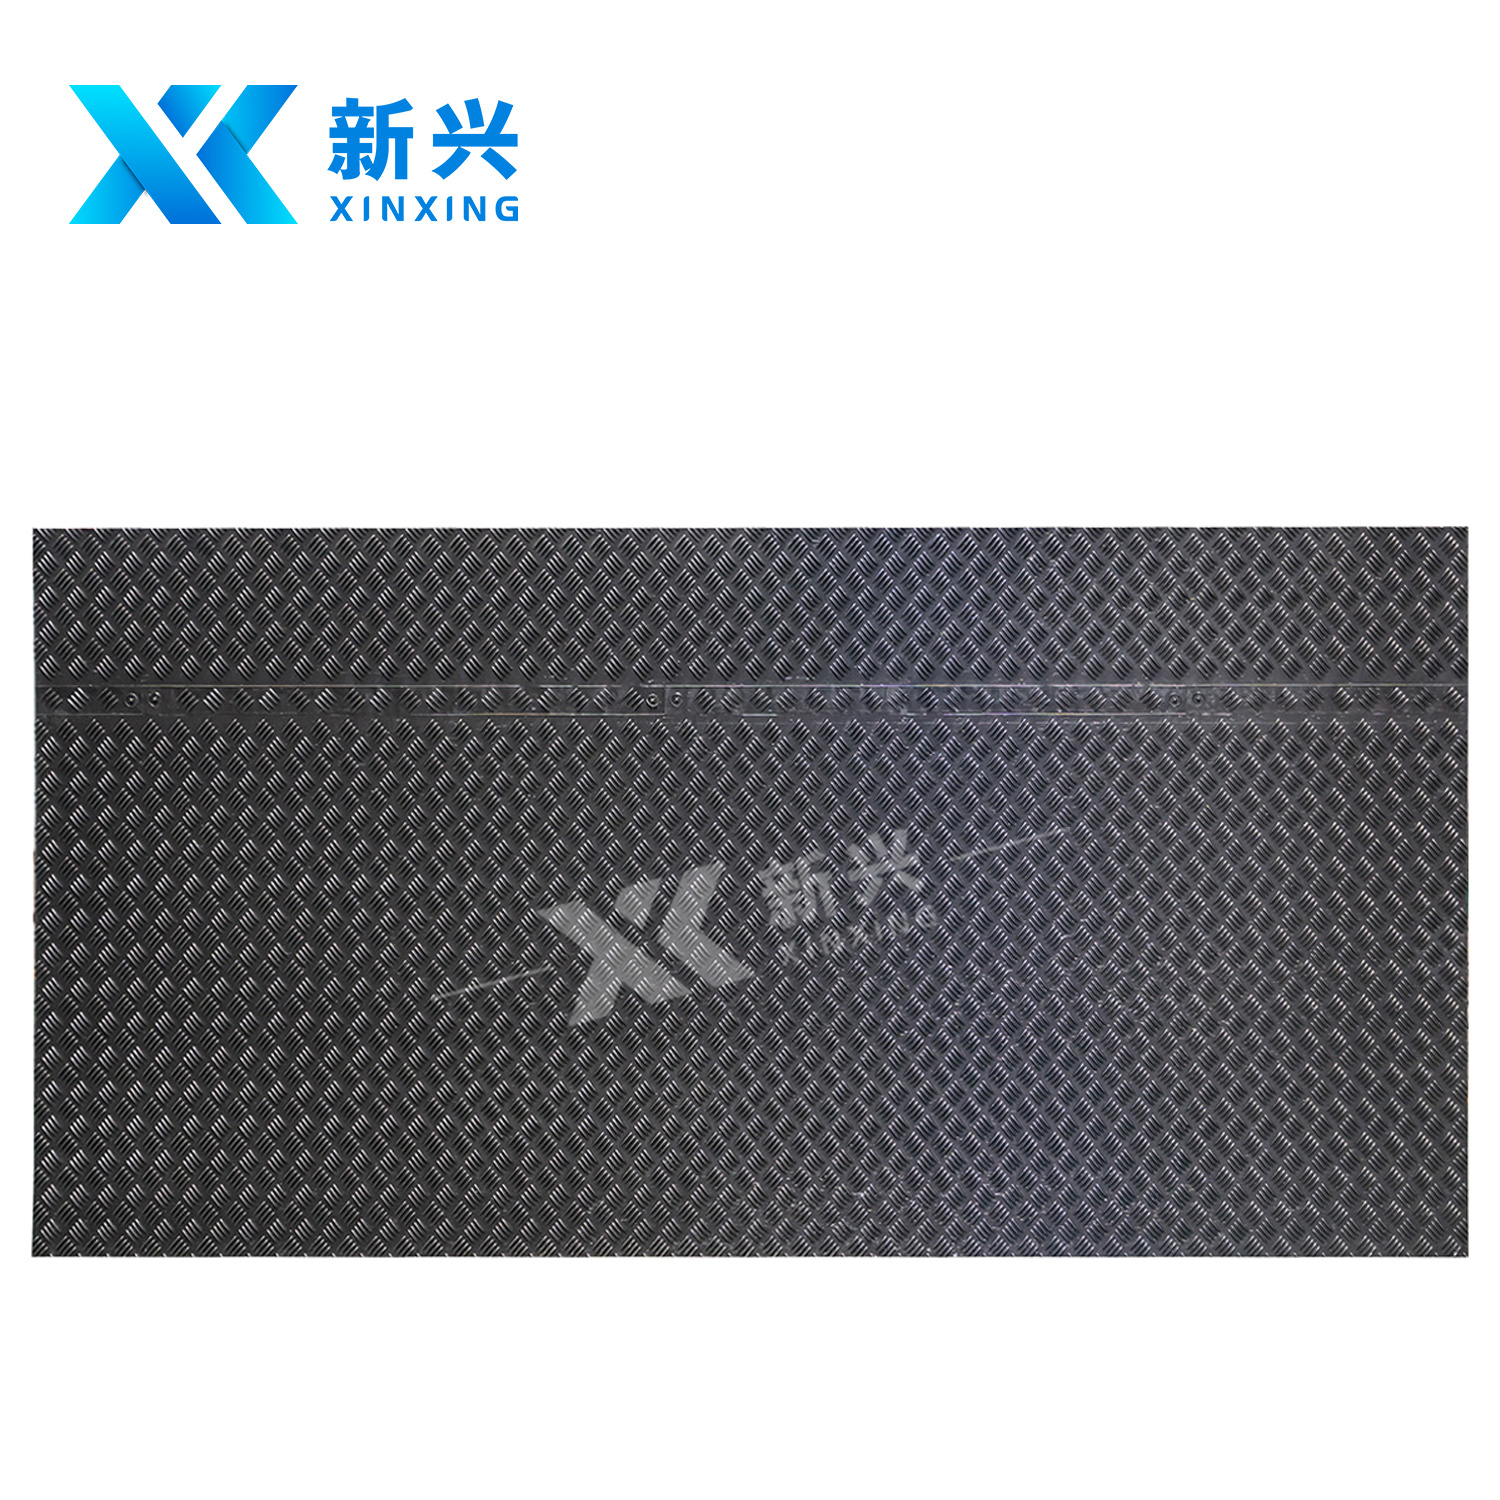 xinxing Ground Protection Mats / road mats pe material